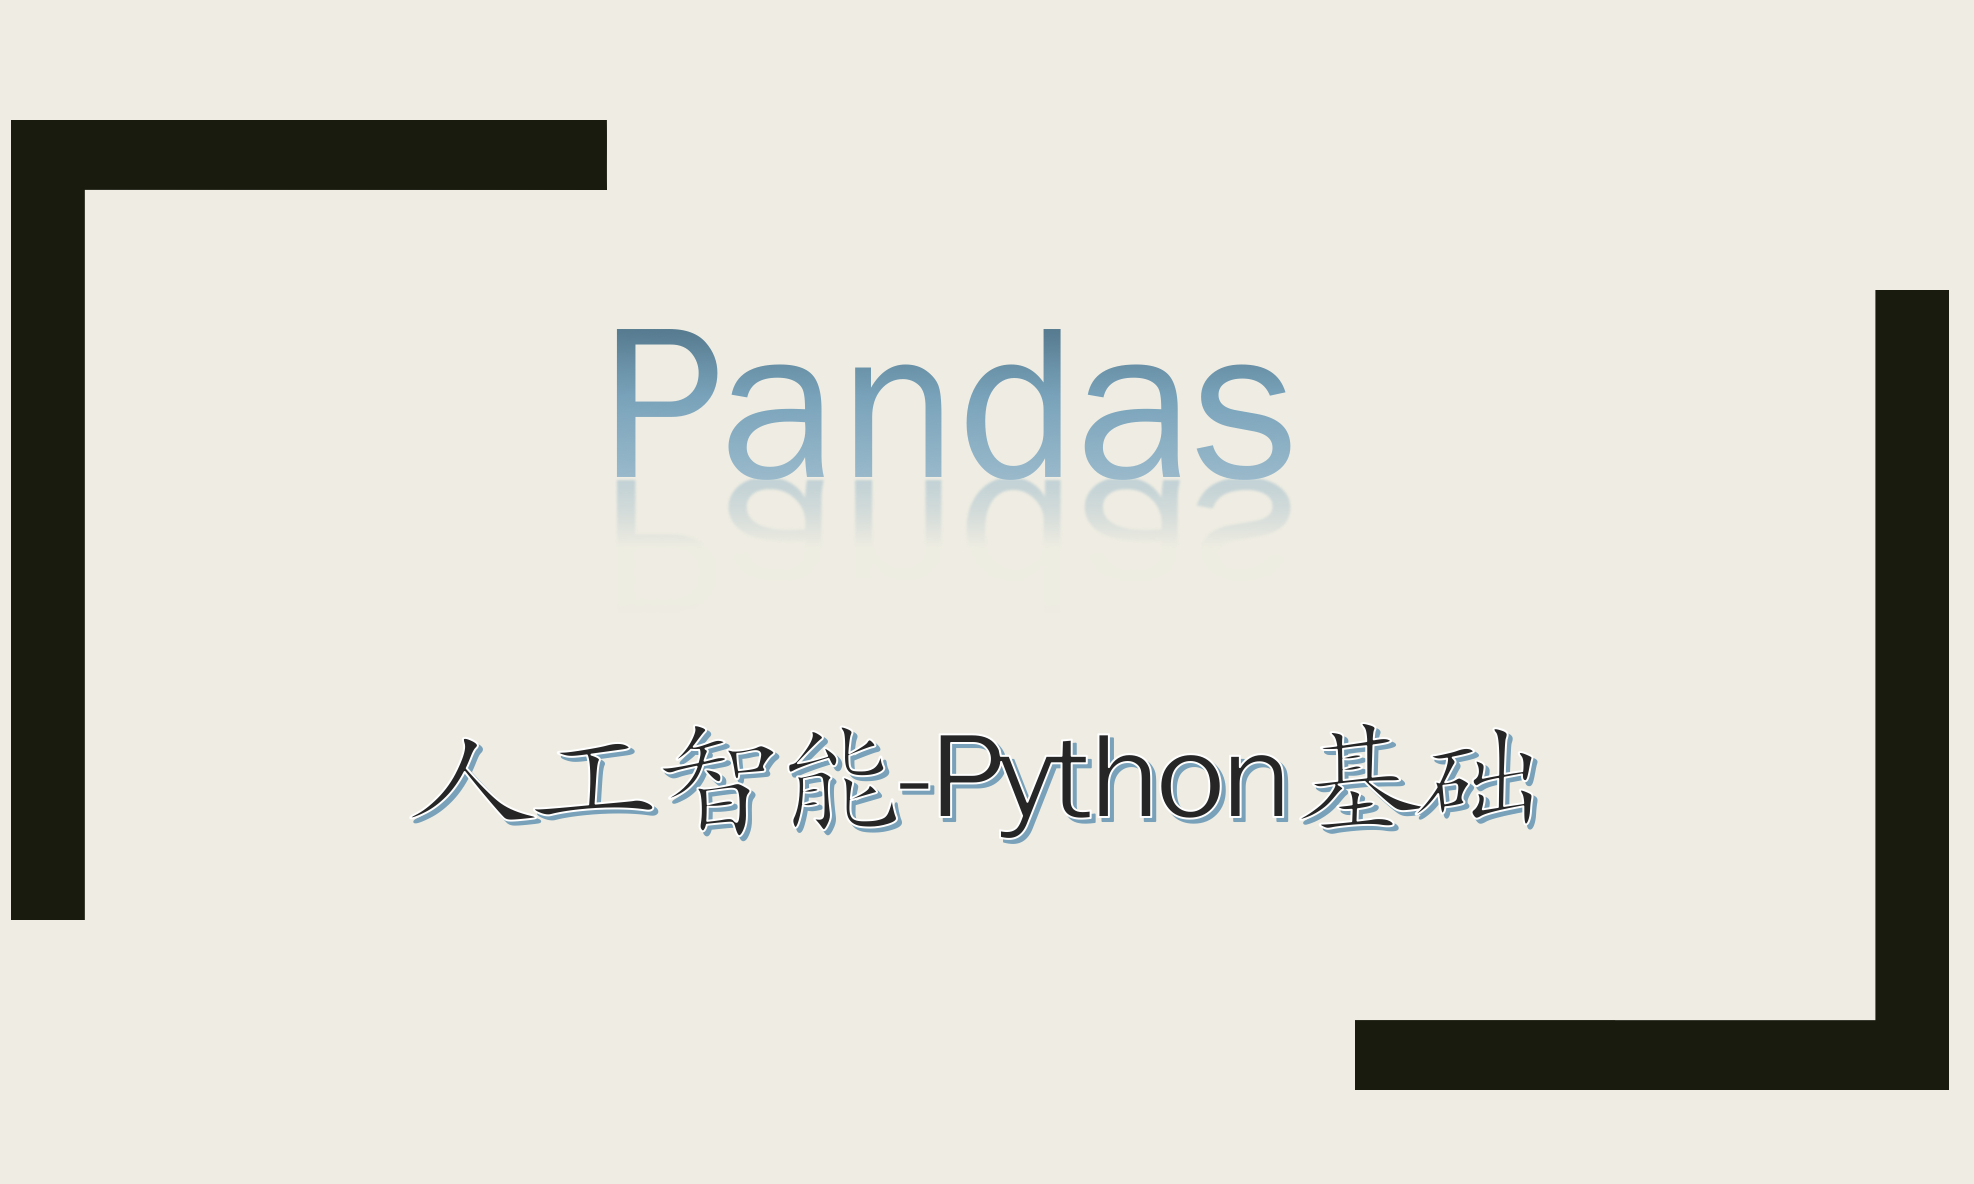 人工智能Python之Pandas基础系列视频课程